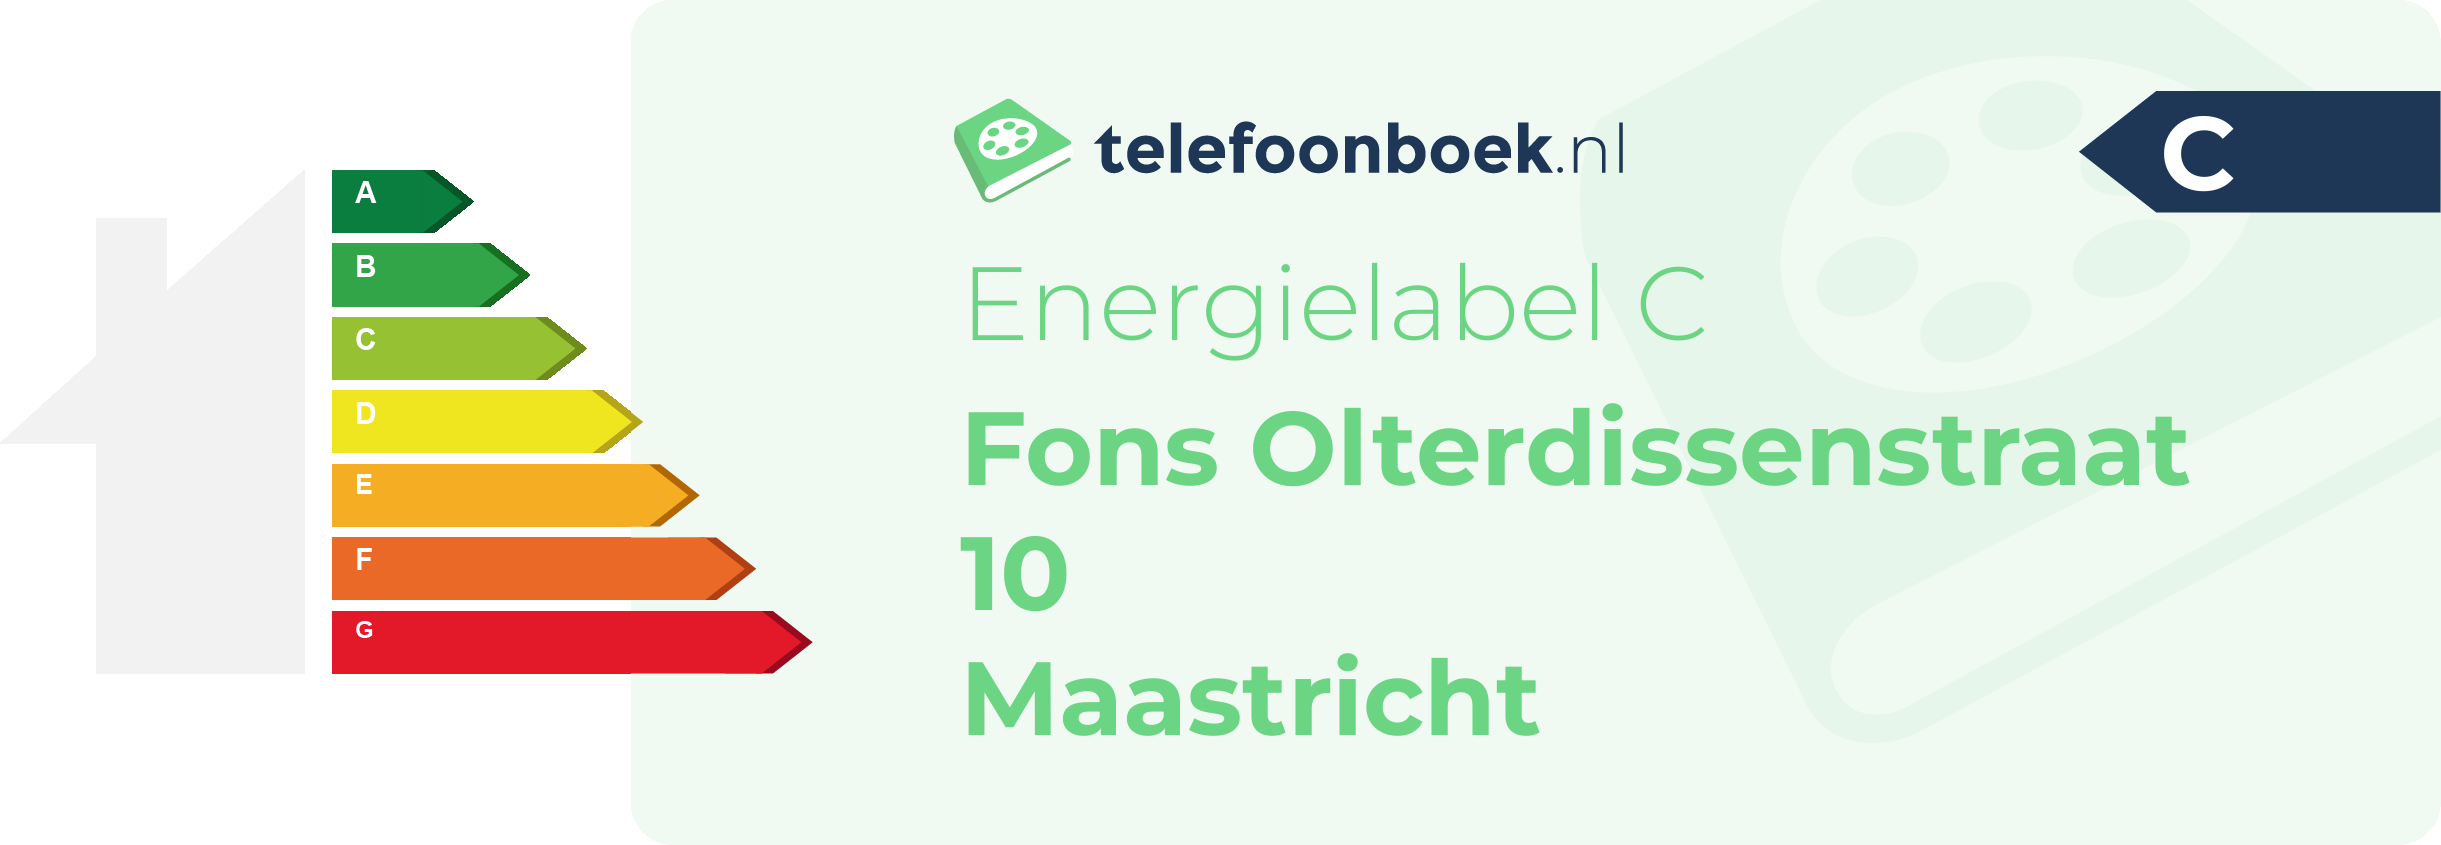 Energielabel Fons Olterdissenstraat 10 Maastricht